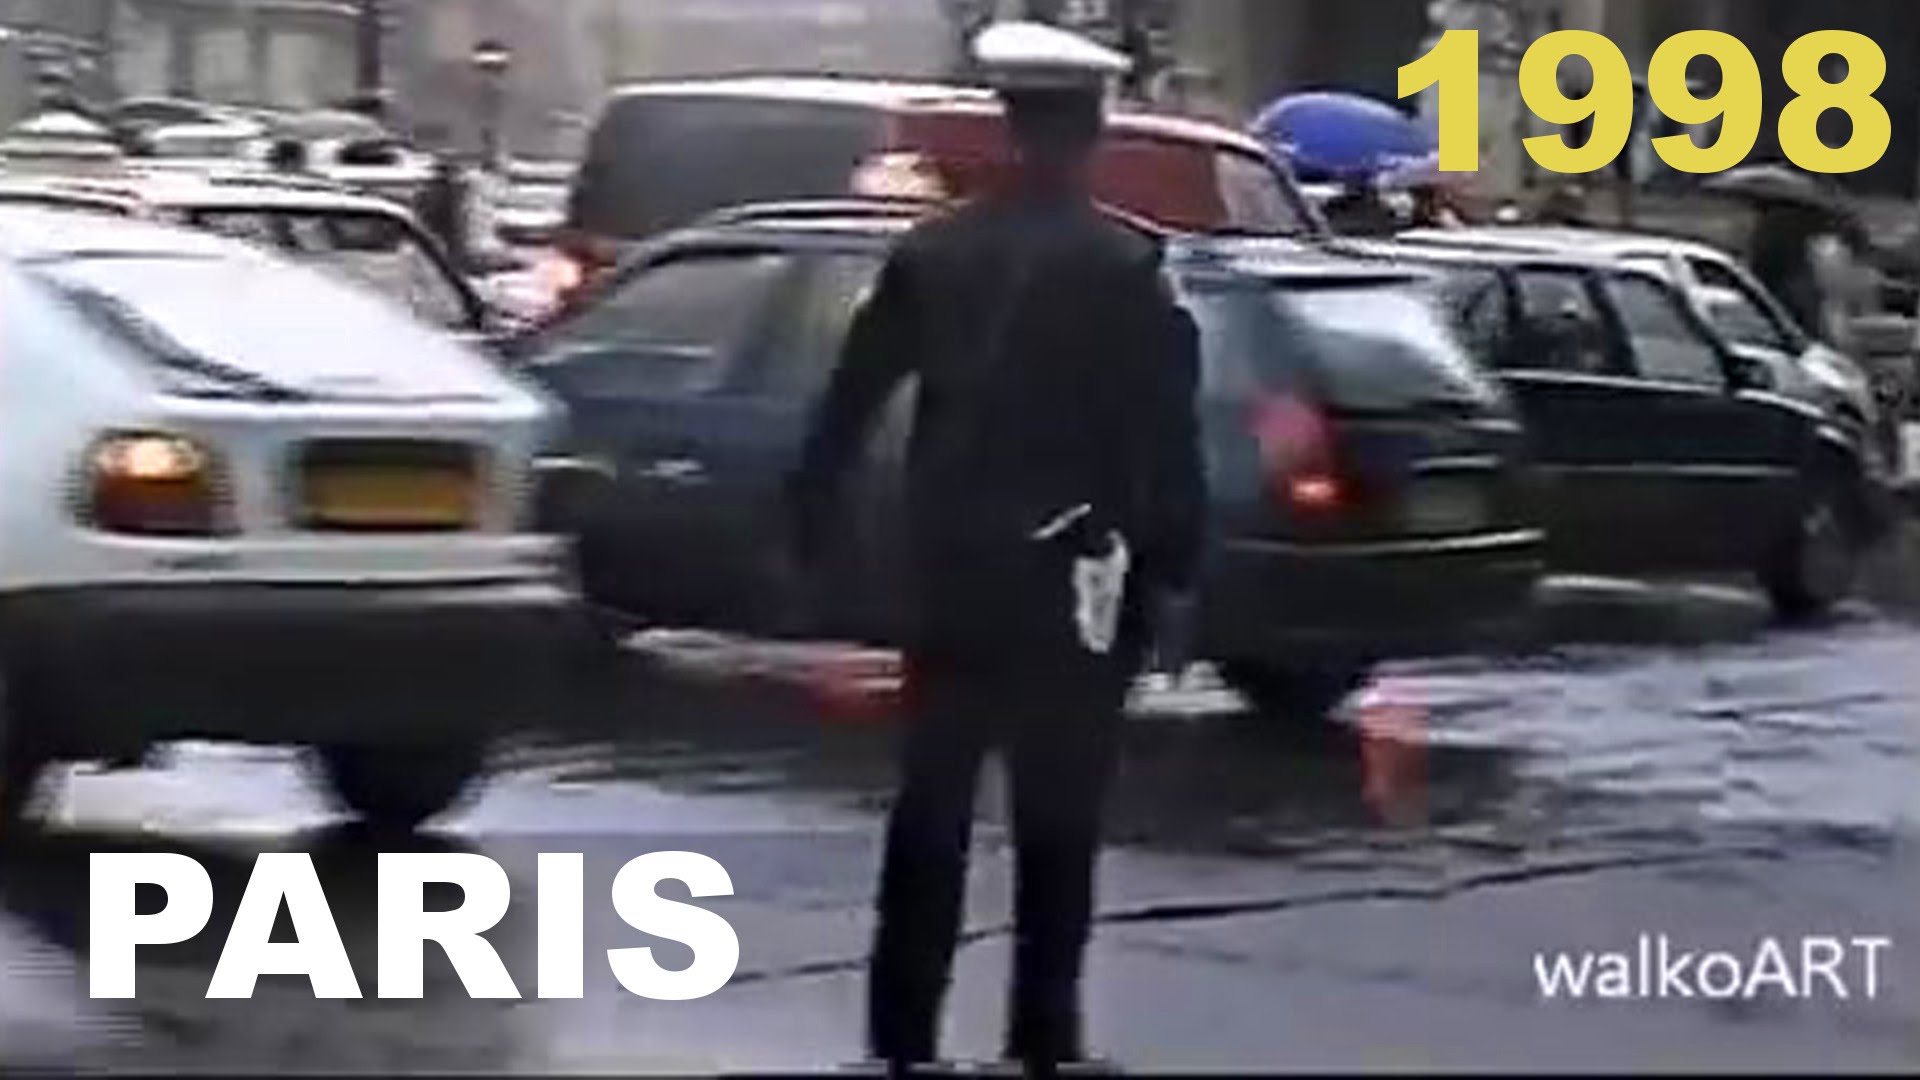 Funny PARIS ! Der Verkehrspolizist in Aktion - the traffic cop in ...